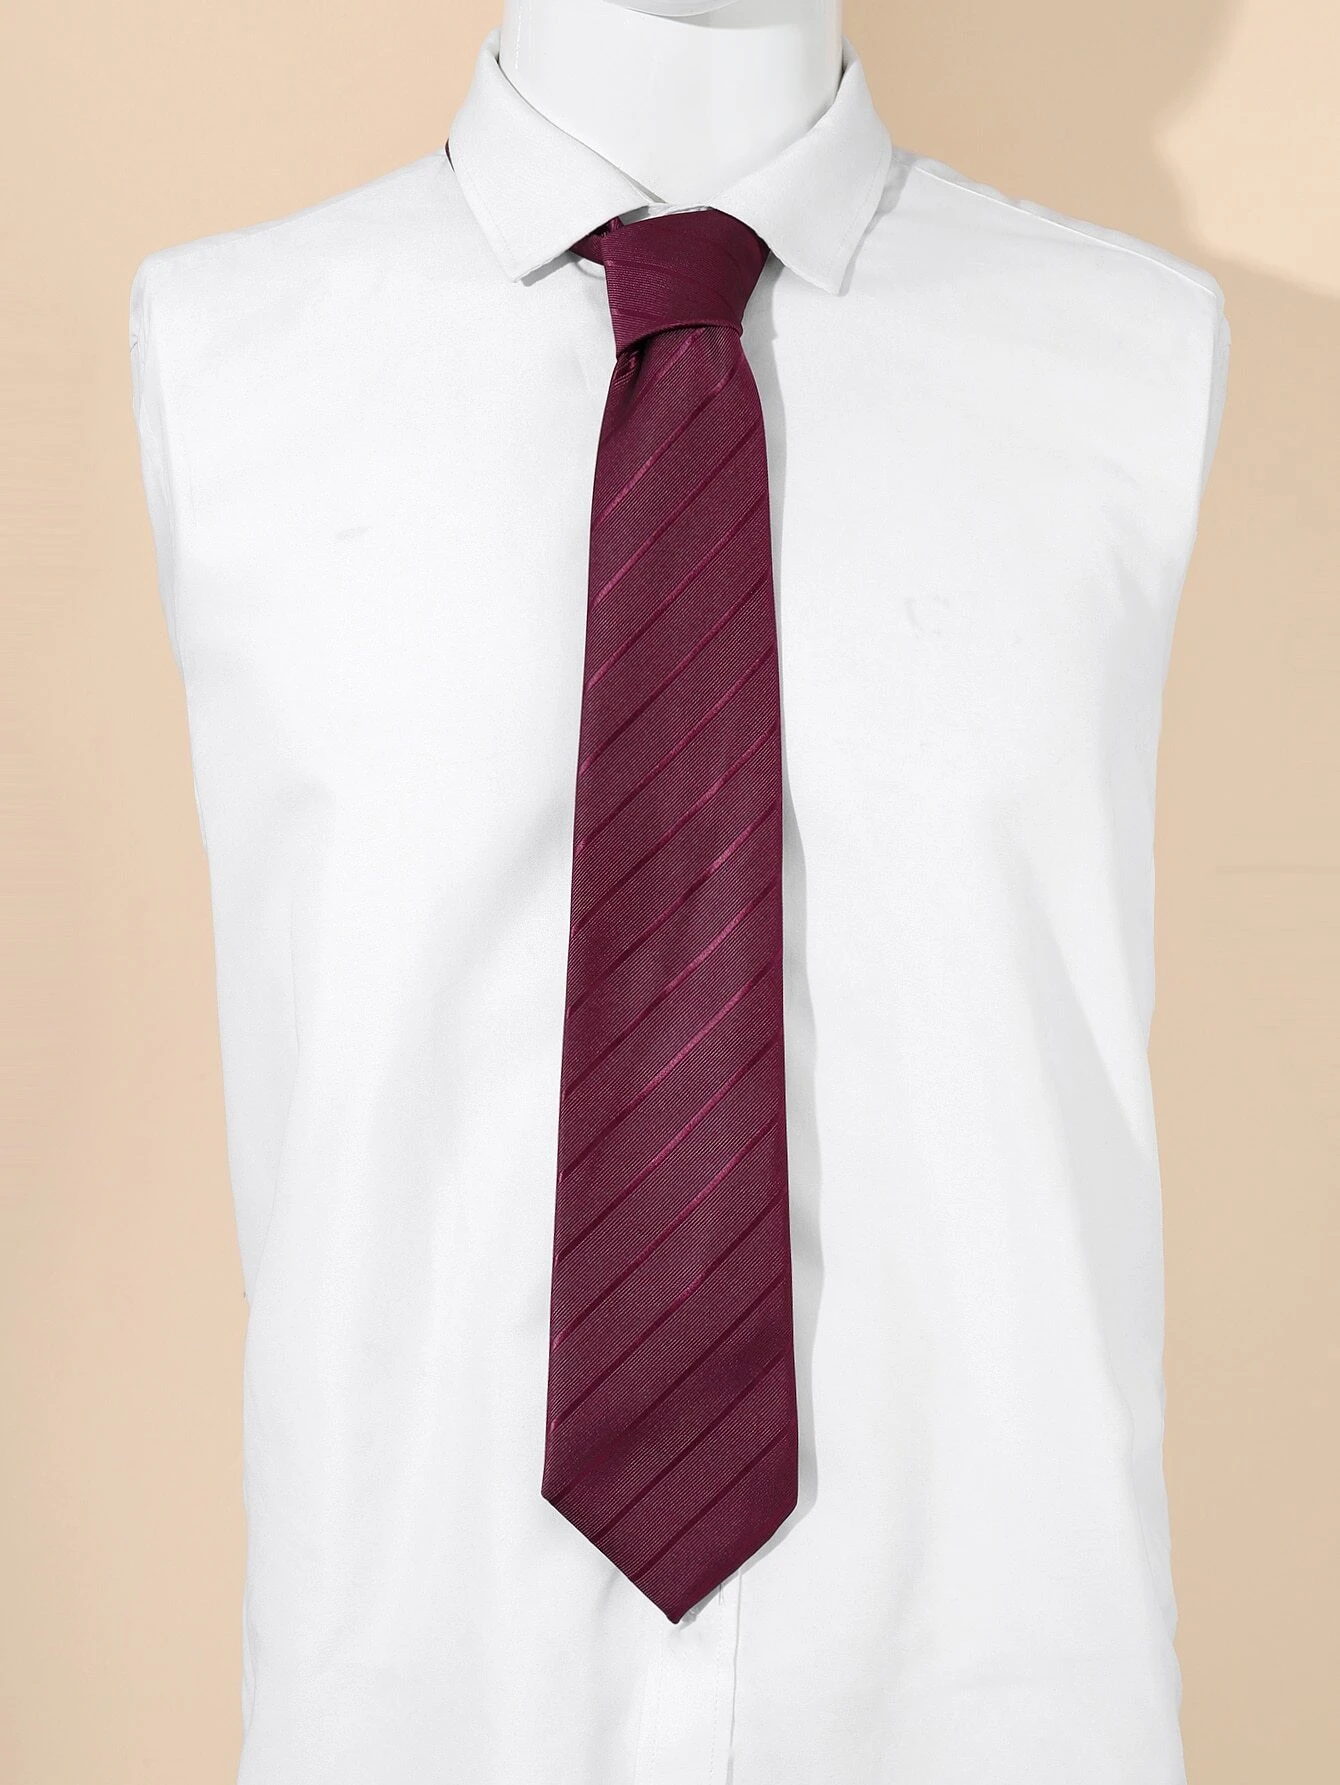 Πολυτελής μπορντω ανδρική γραβάτα ριγέ